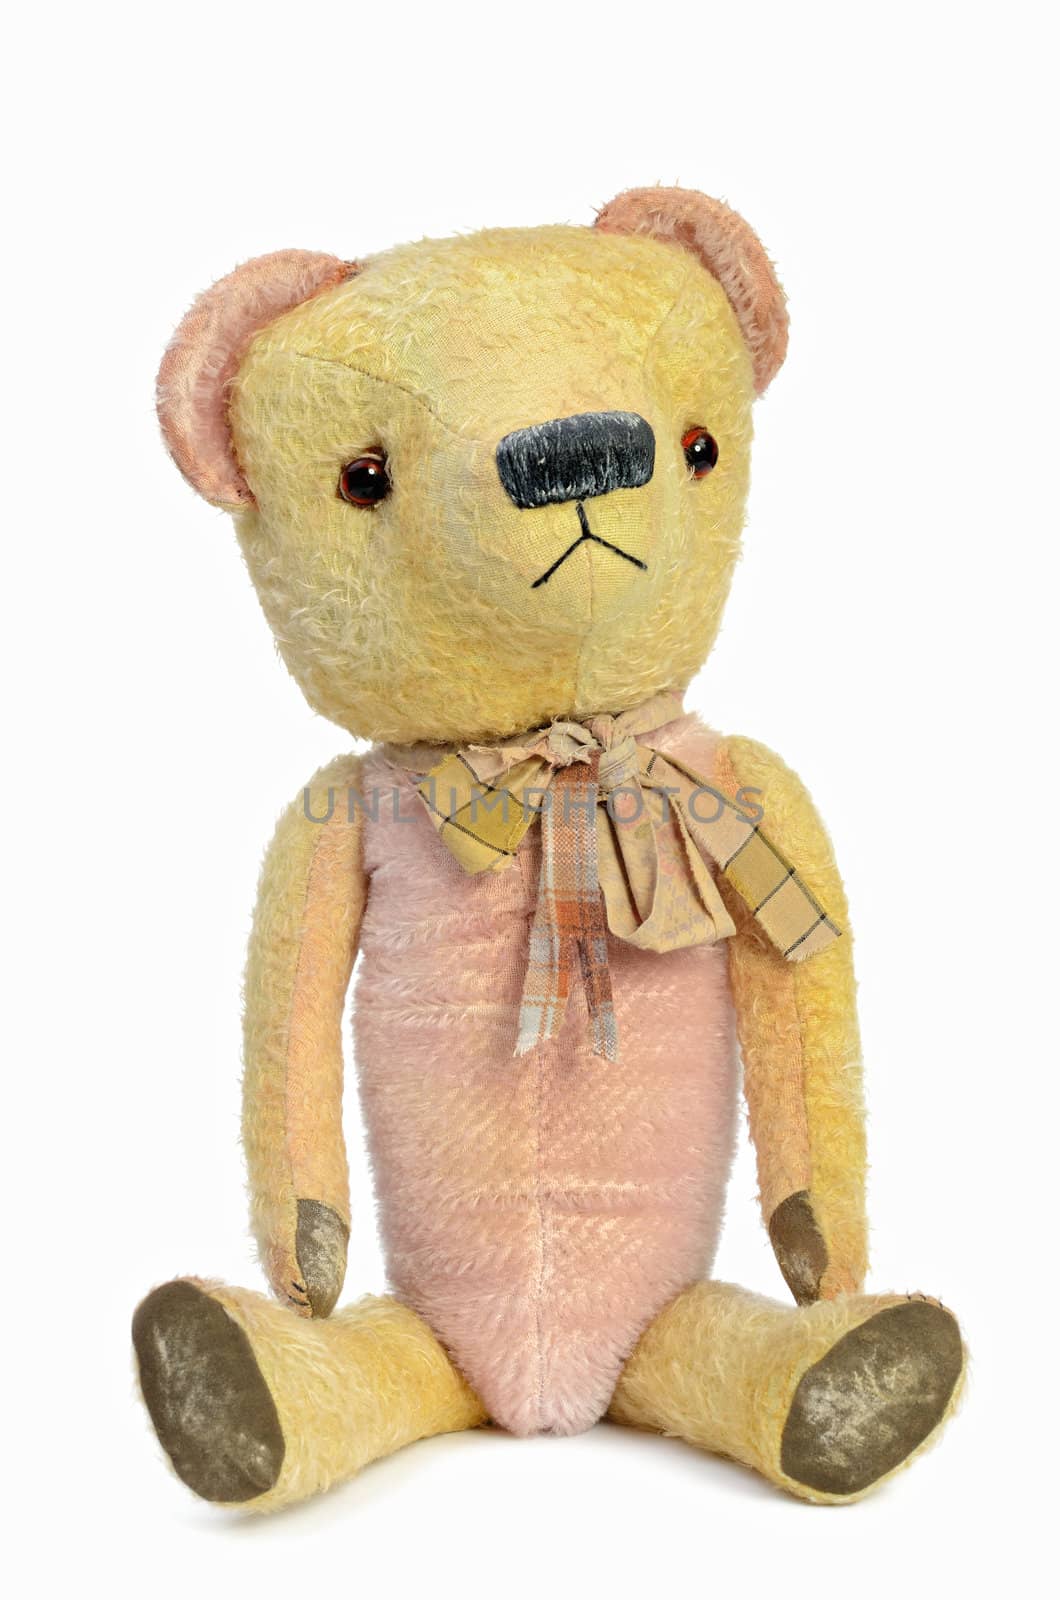 Teddy-Bear by styf22